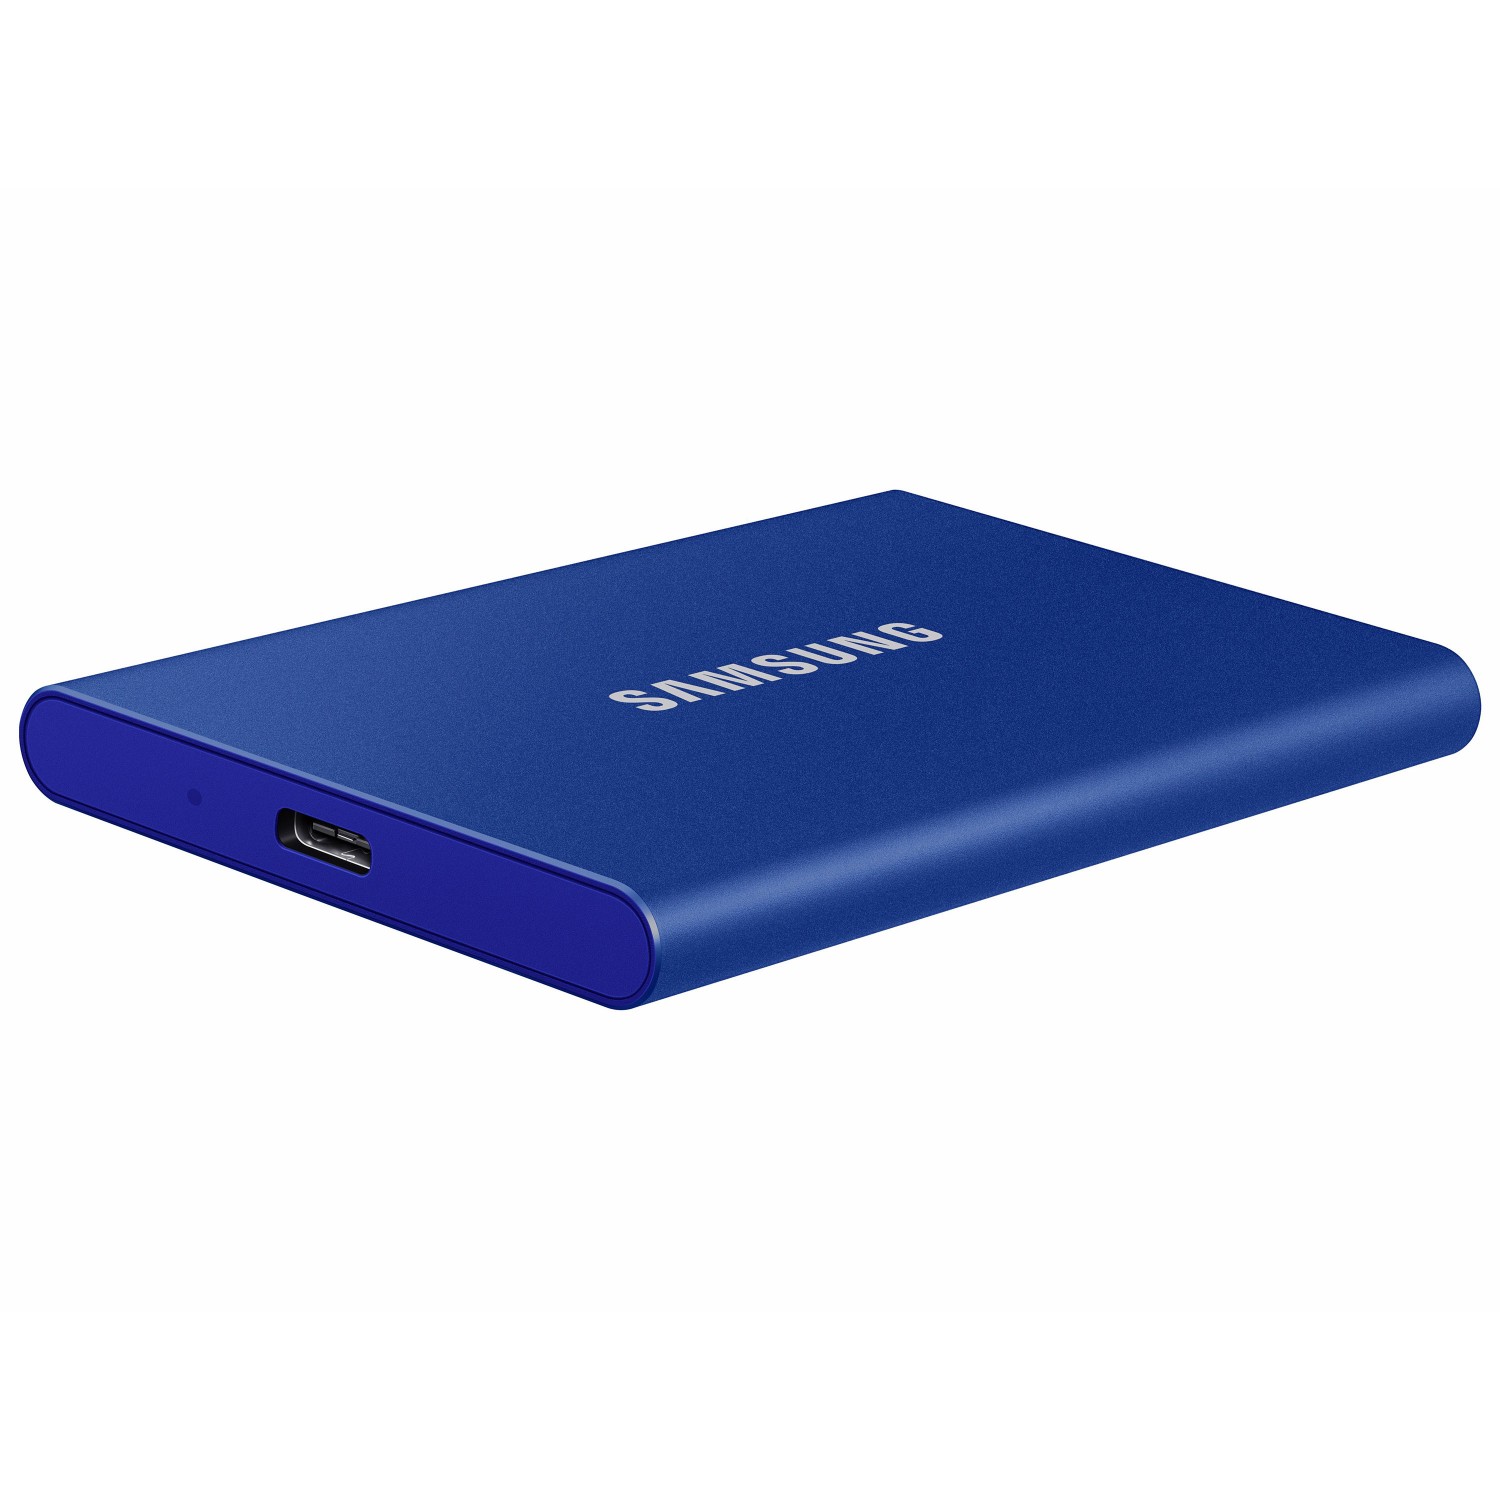 حافظه اس اس دی اکسترنال SAMSUNG T7 1TB - Indigo Blue-3